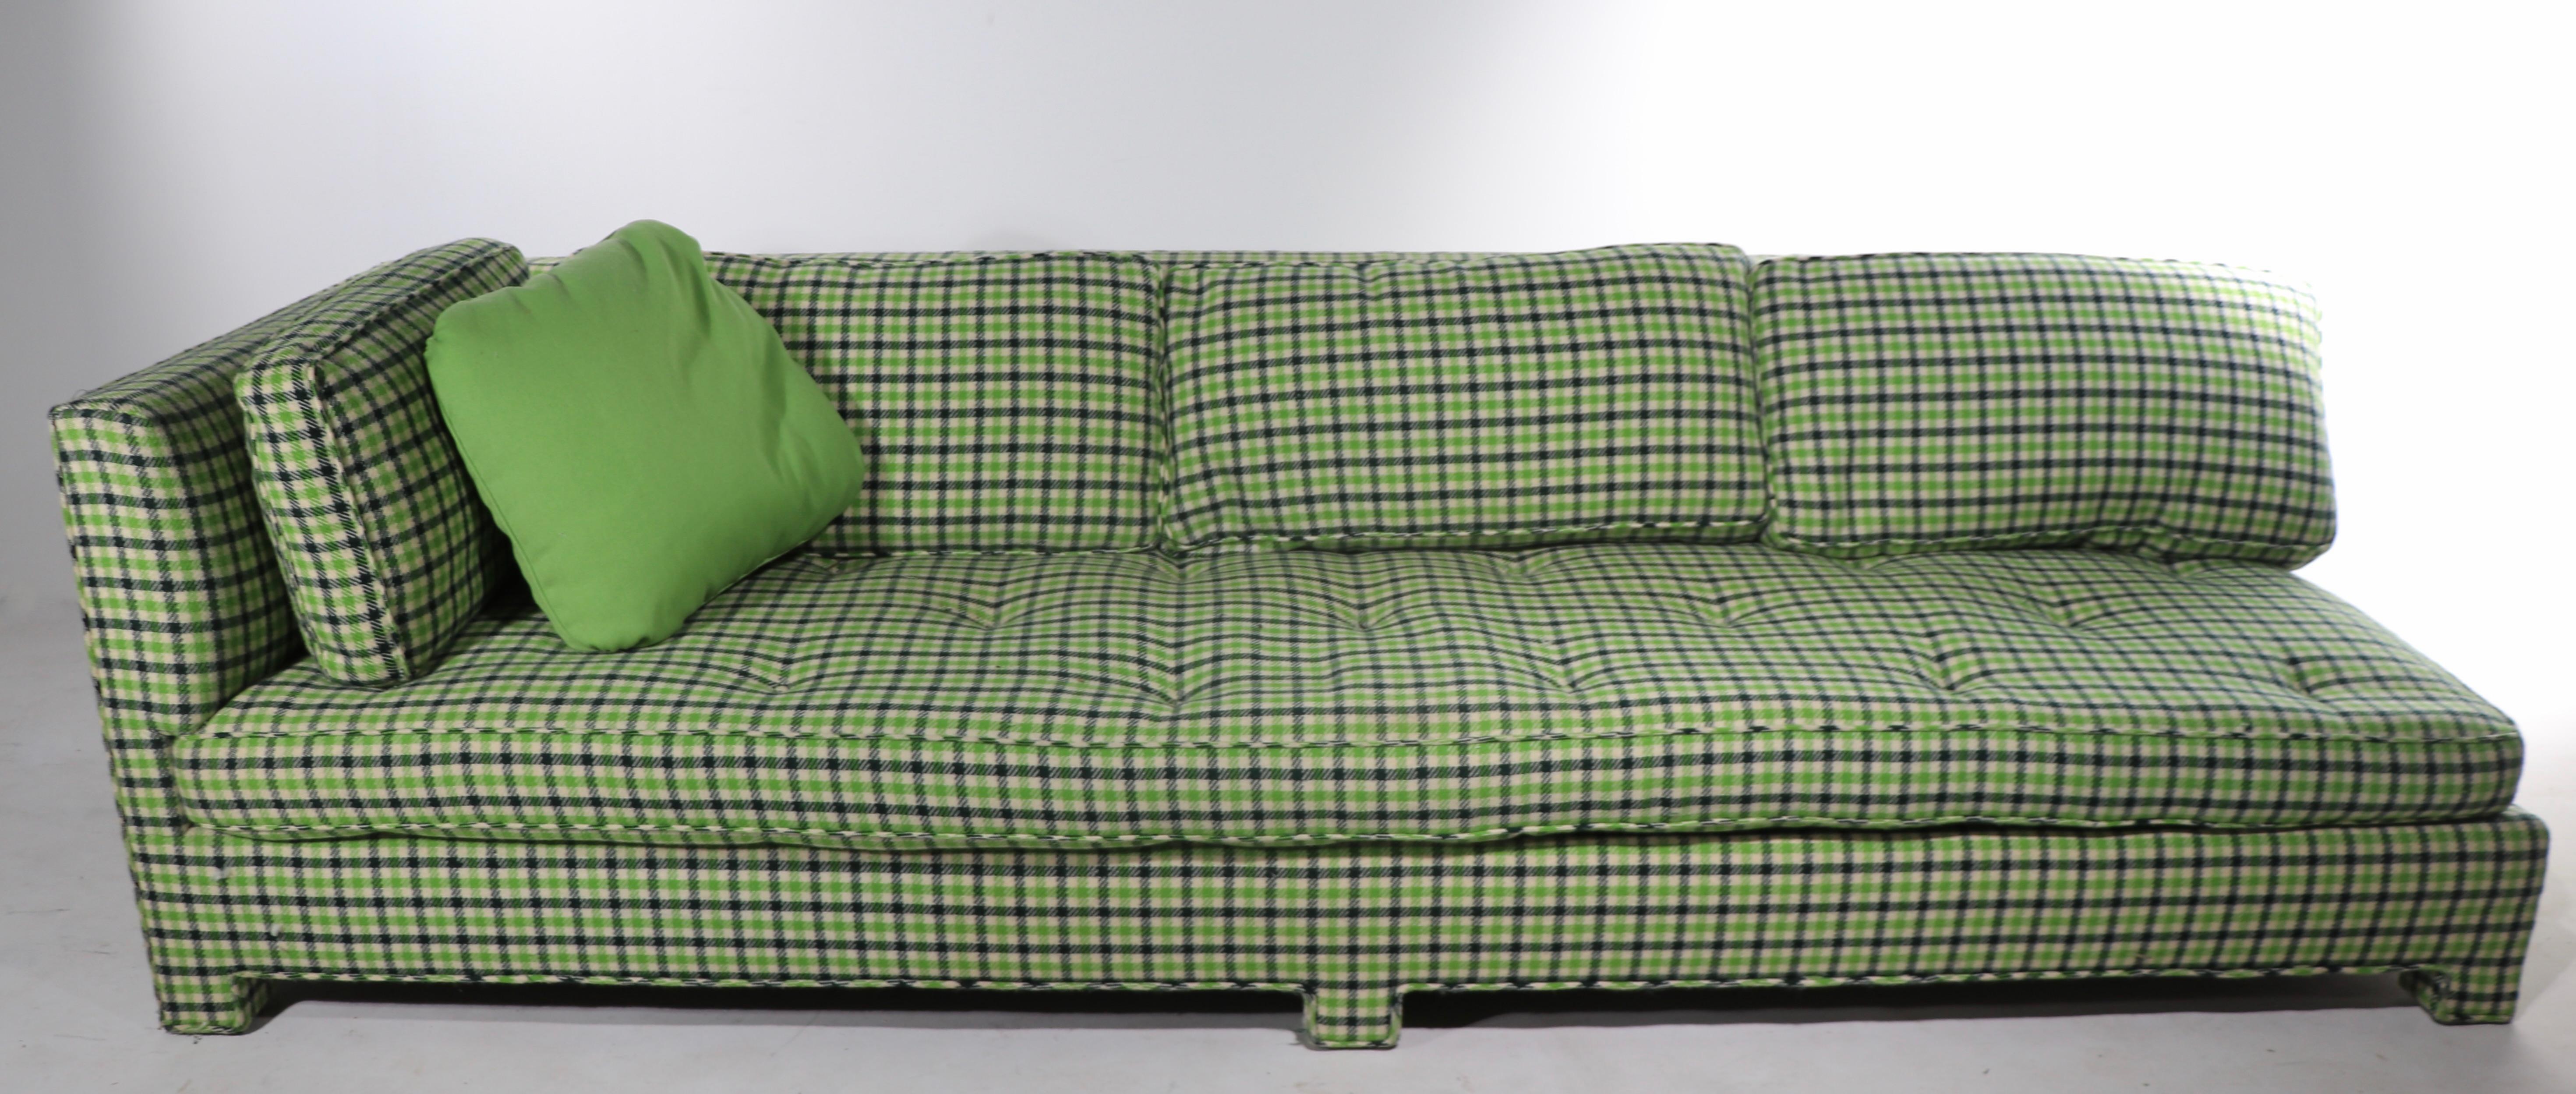 Schickes, architektonisches und modisches asymmetrisches Sofa des bekannten Herstellers Thomas De Ángelis. Eine Seite des Sofas ist mit einem geraden Arm ausgestattet, die andere Seite ist armlos. Strukturell solide und robust, weist der Stoff